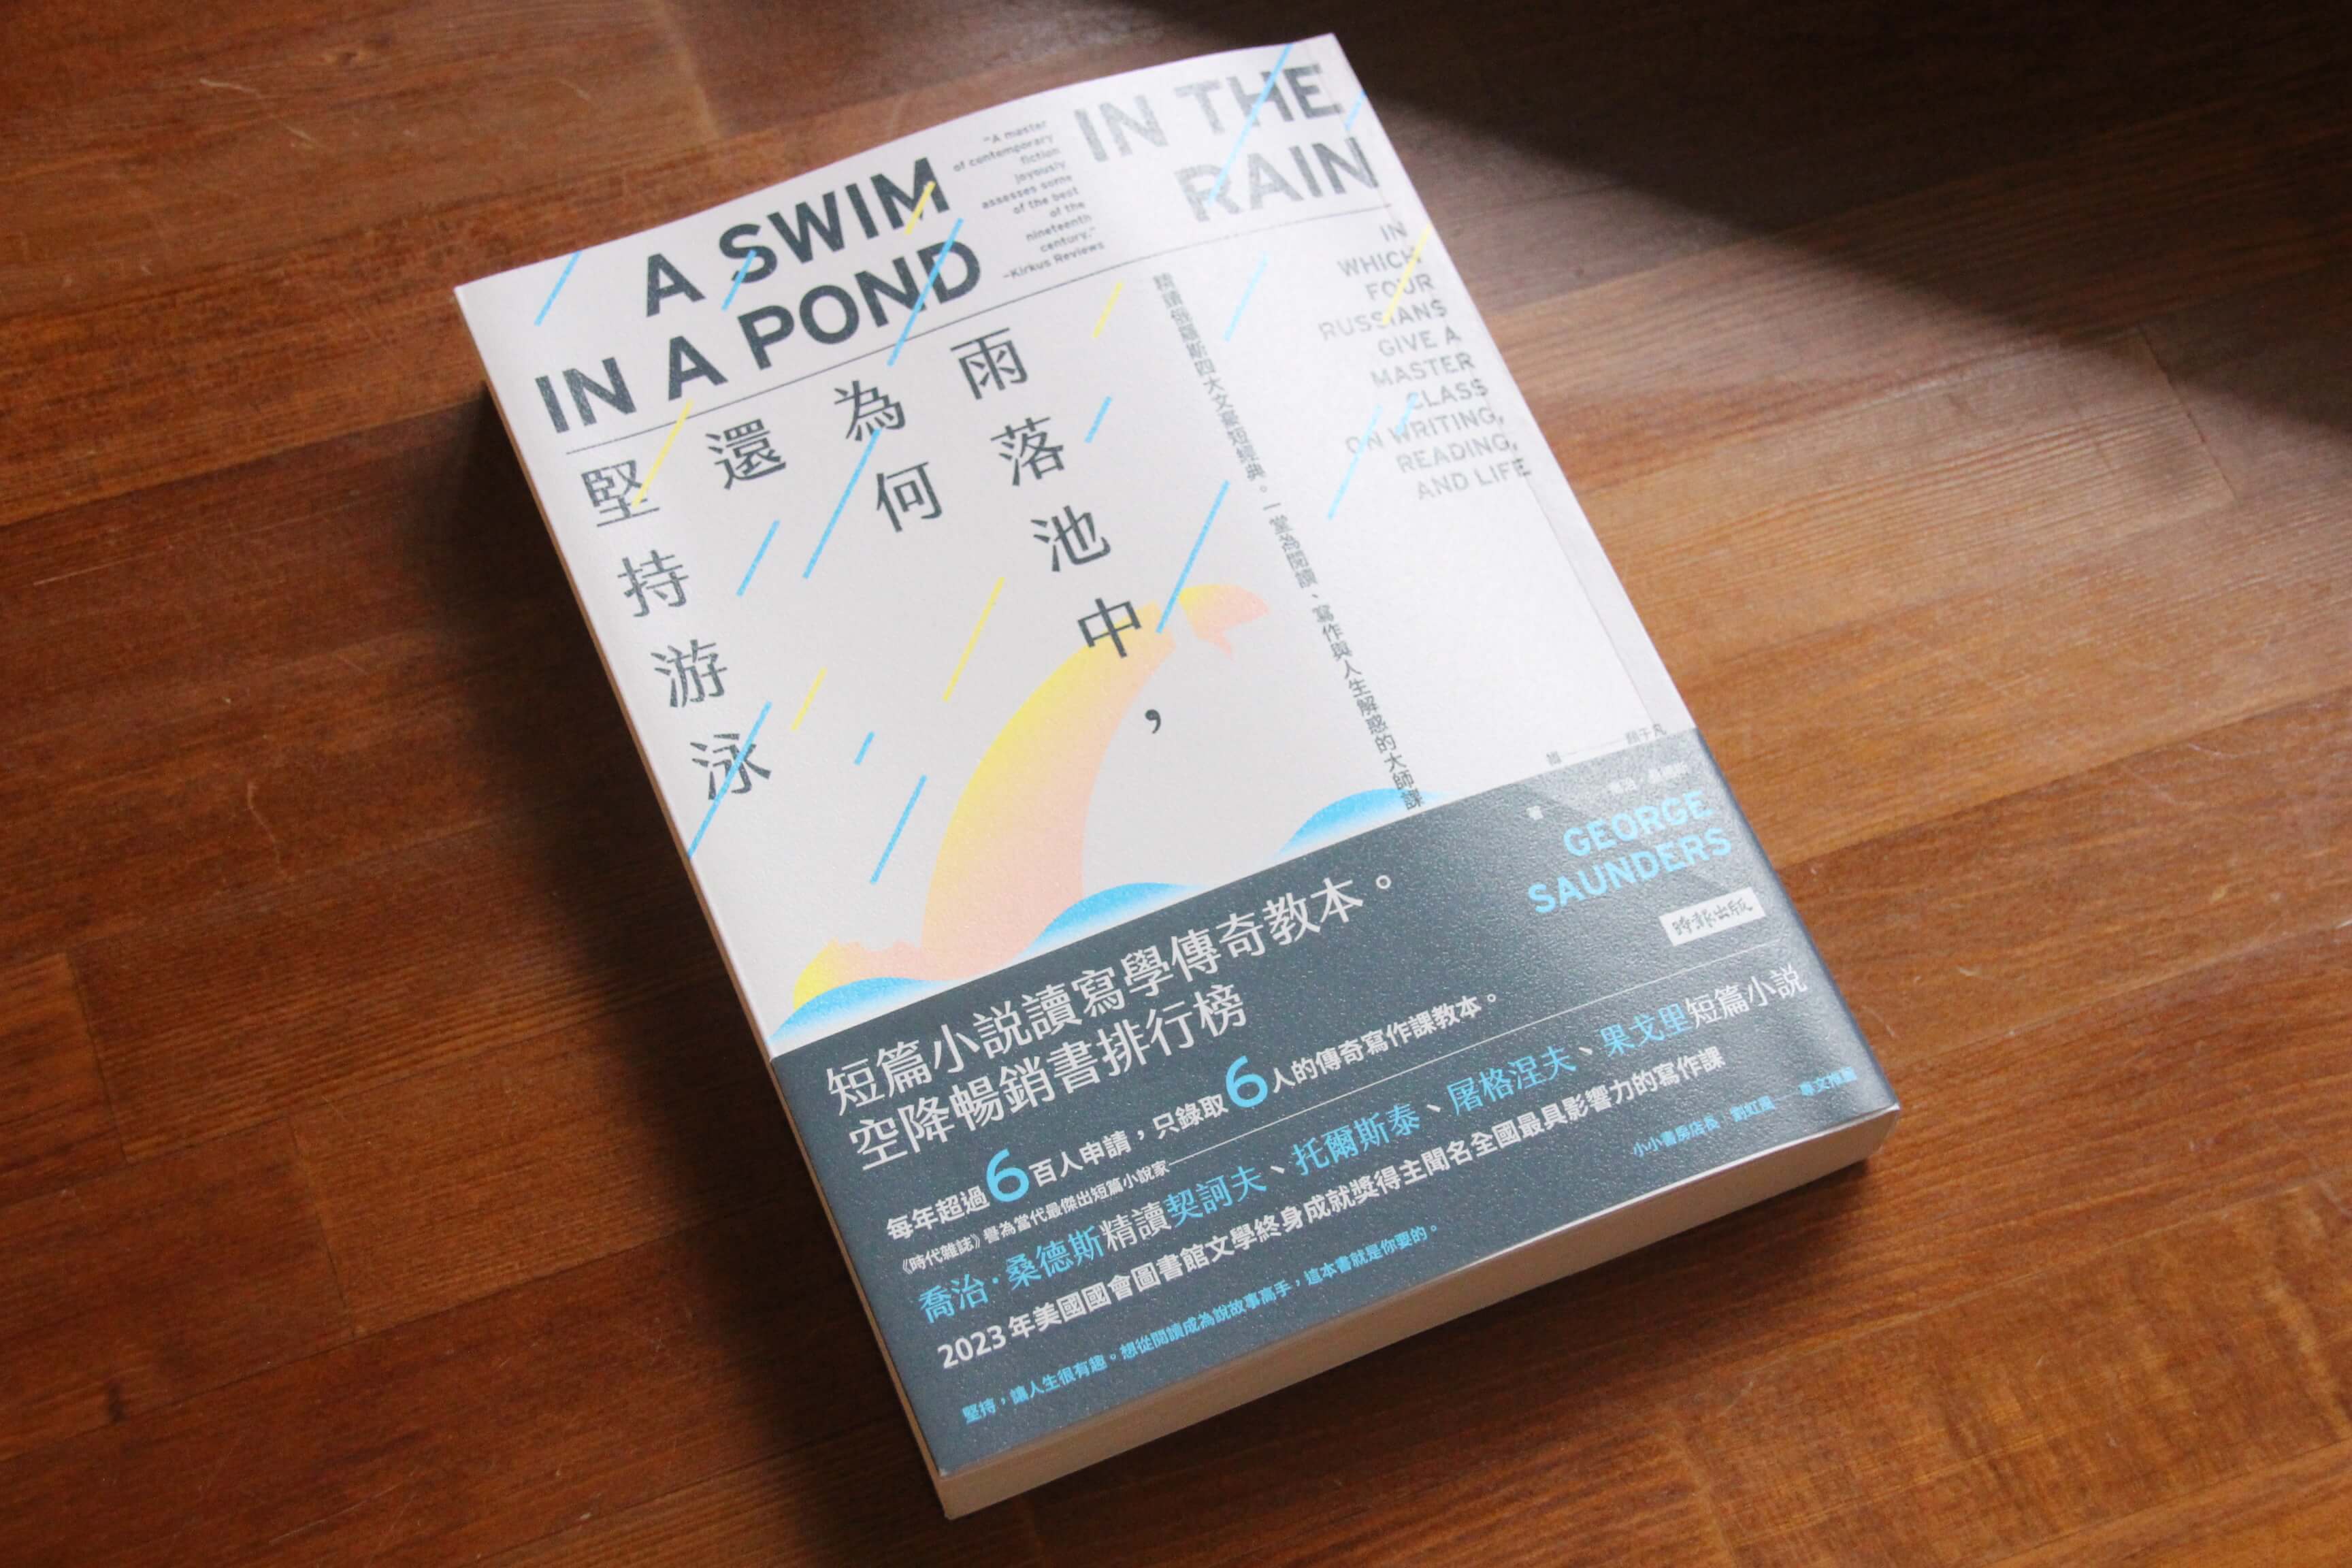 致意感動的一本書《雨落池中，為何還堅持游泳》